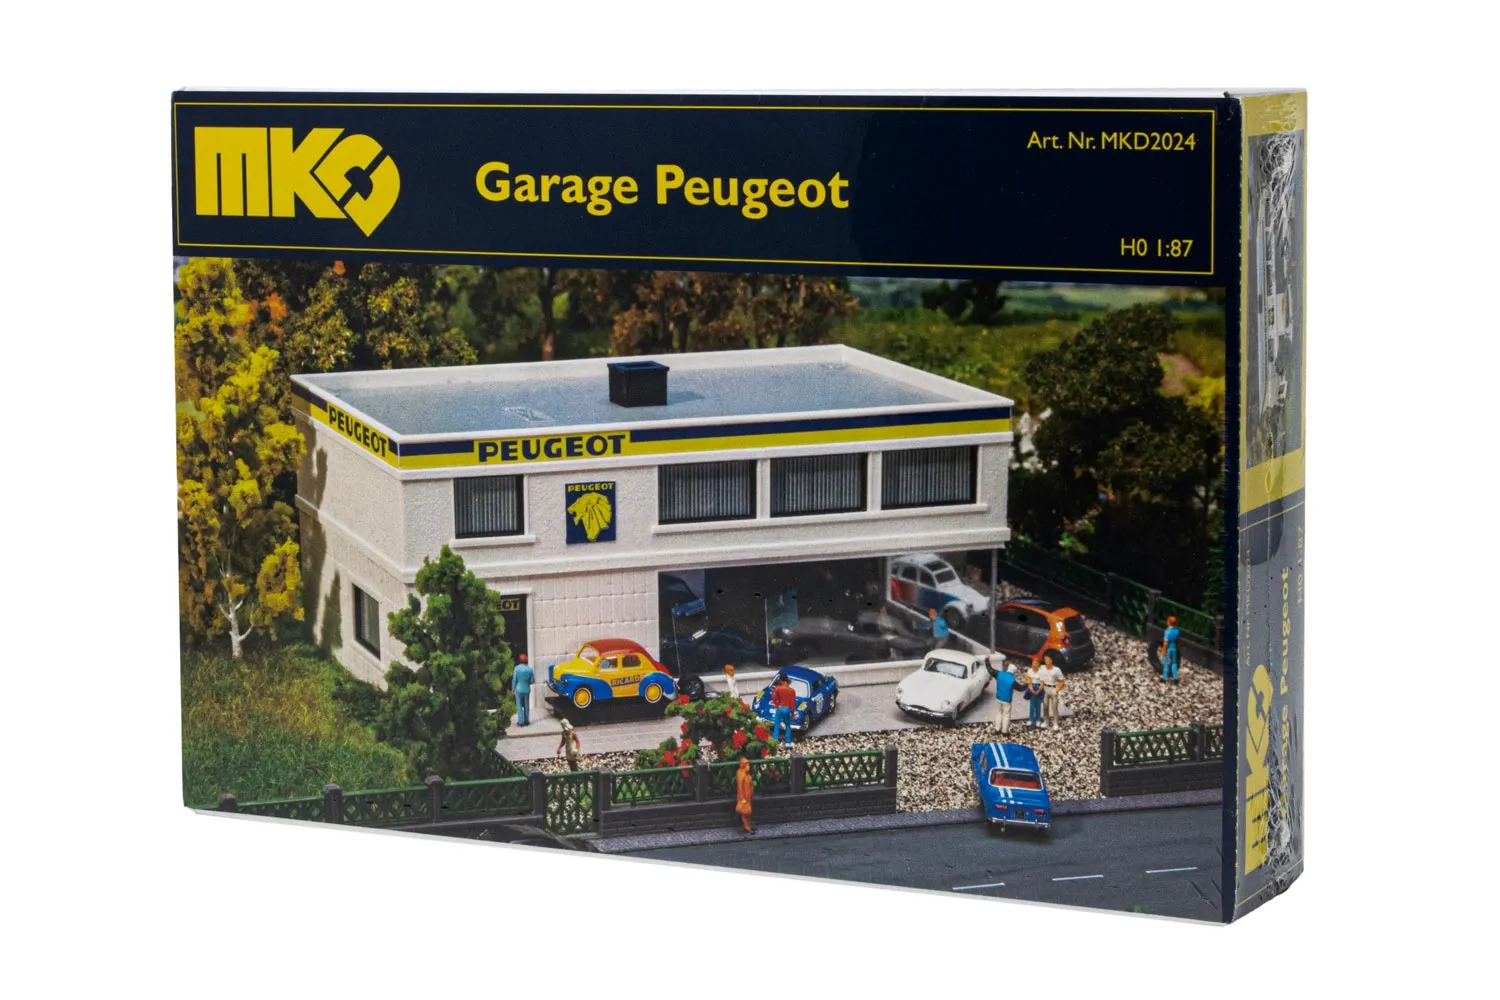 Hornby MKD Garage Peugeot REF mkd2024 ECHELLE HO 